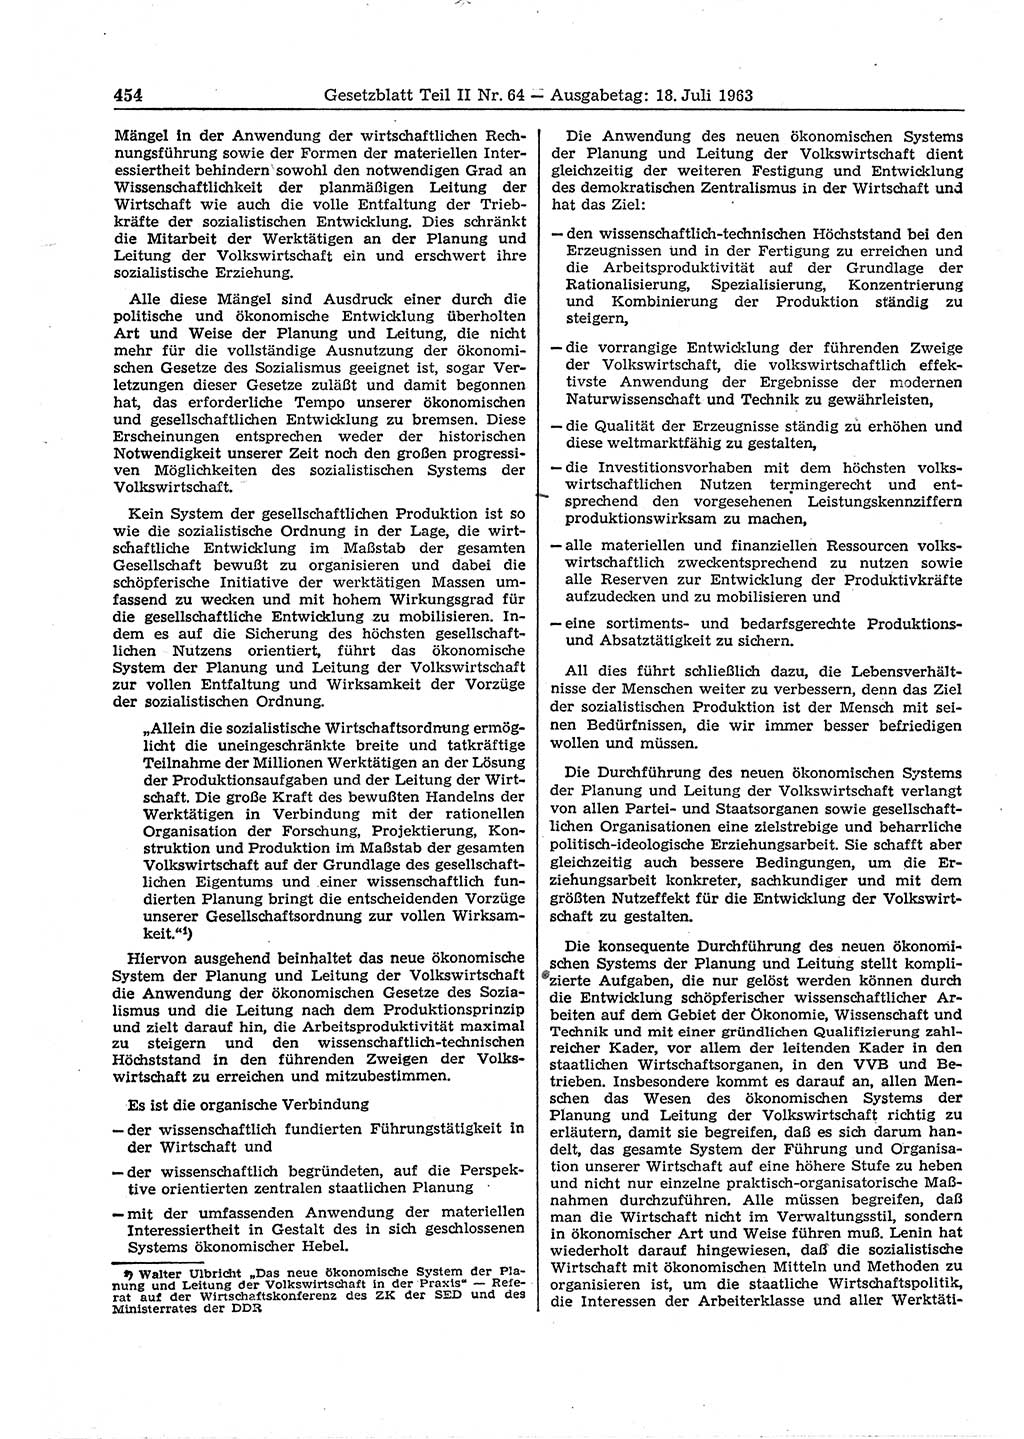 Gesetzblatt (GBl.) der Deutschen Demokratischen Republik (DDR) Teil ⅠⅠ 1963, Seite 454 (GBl. DDR ⅠⅠ 1963, S. 454)